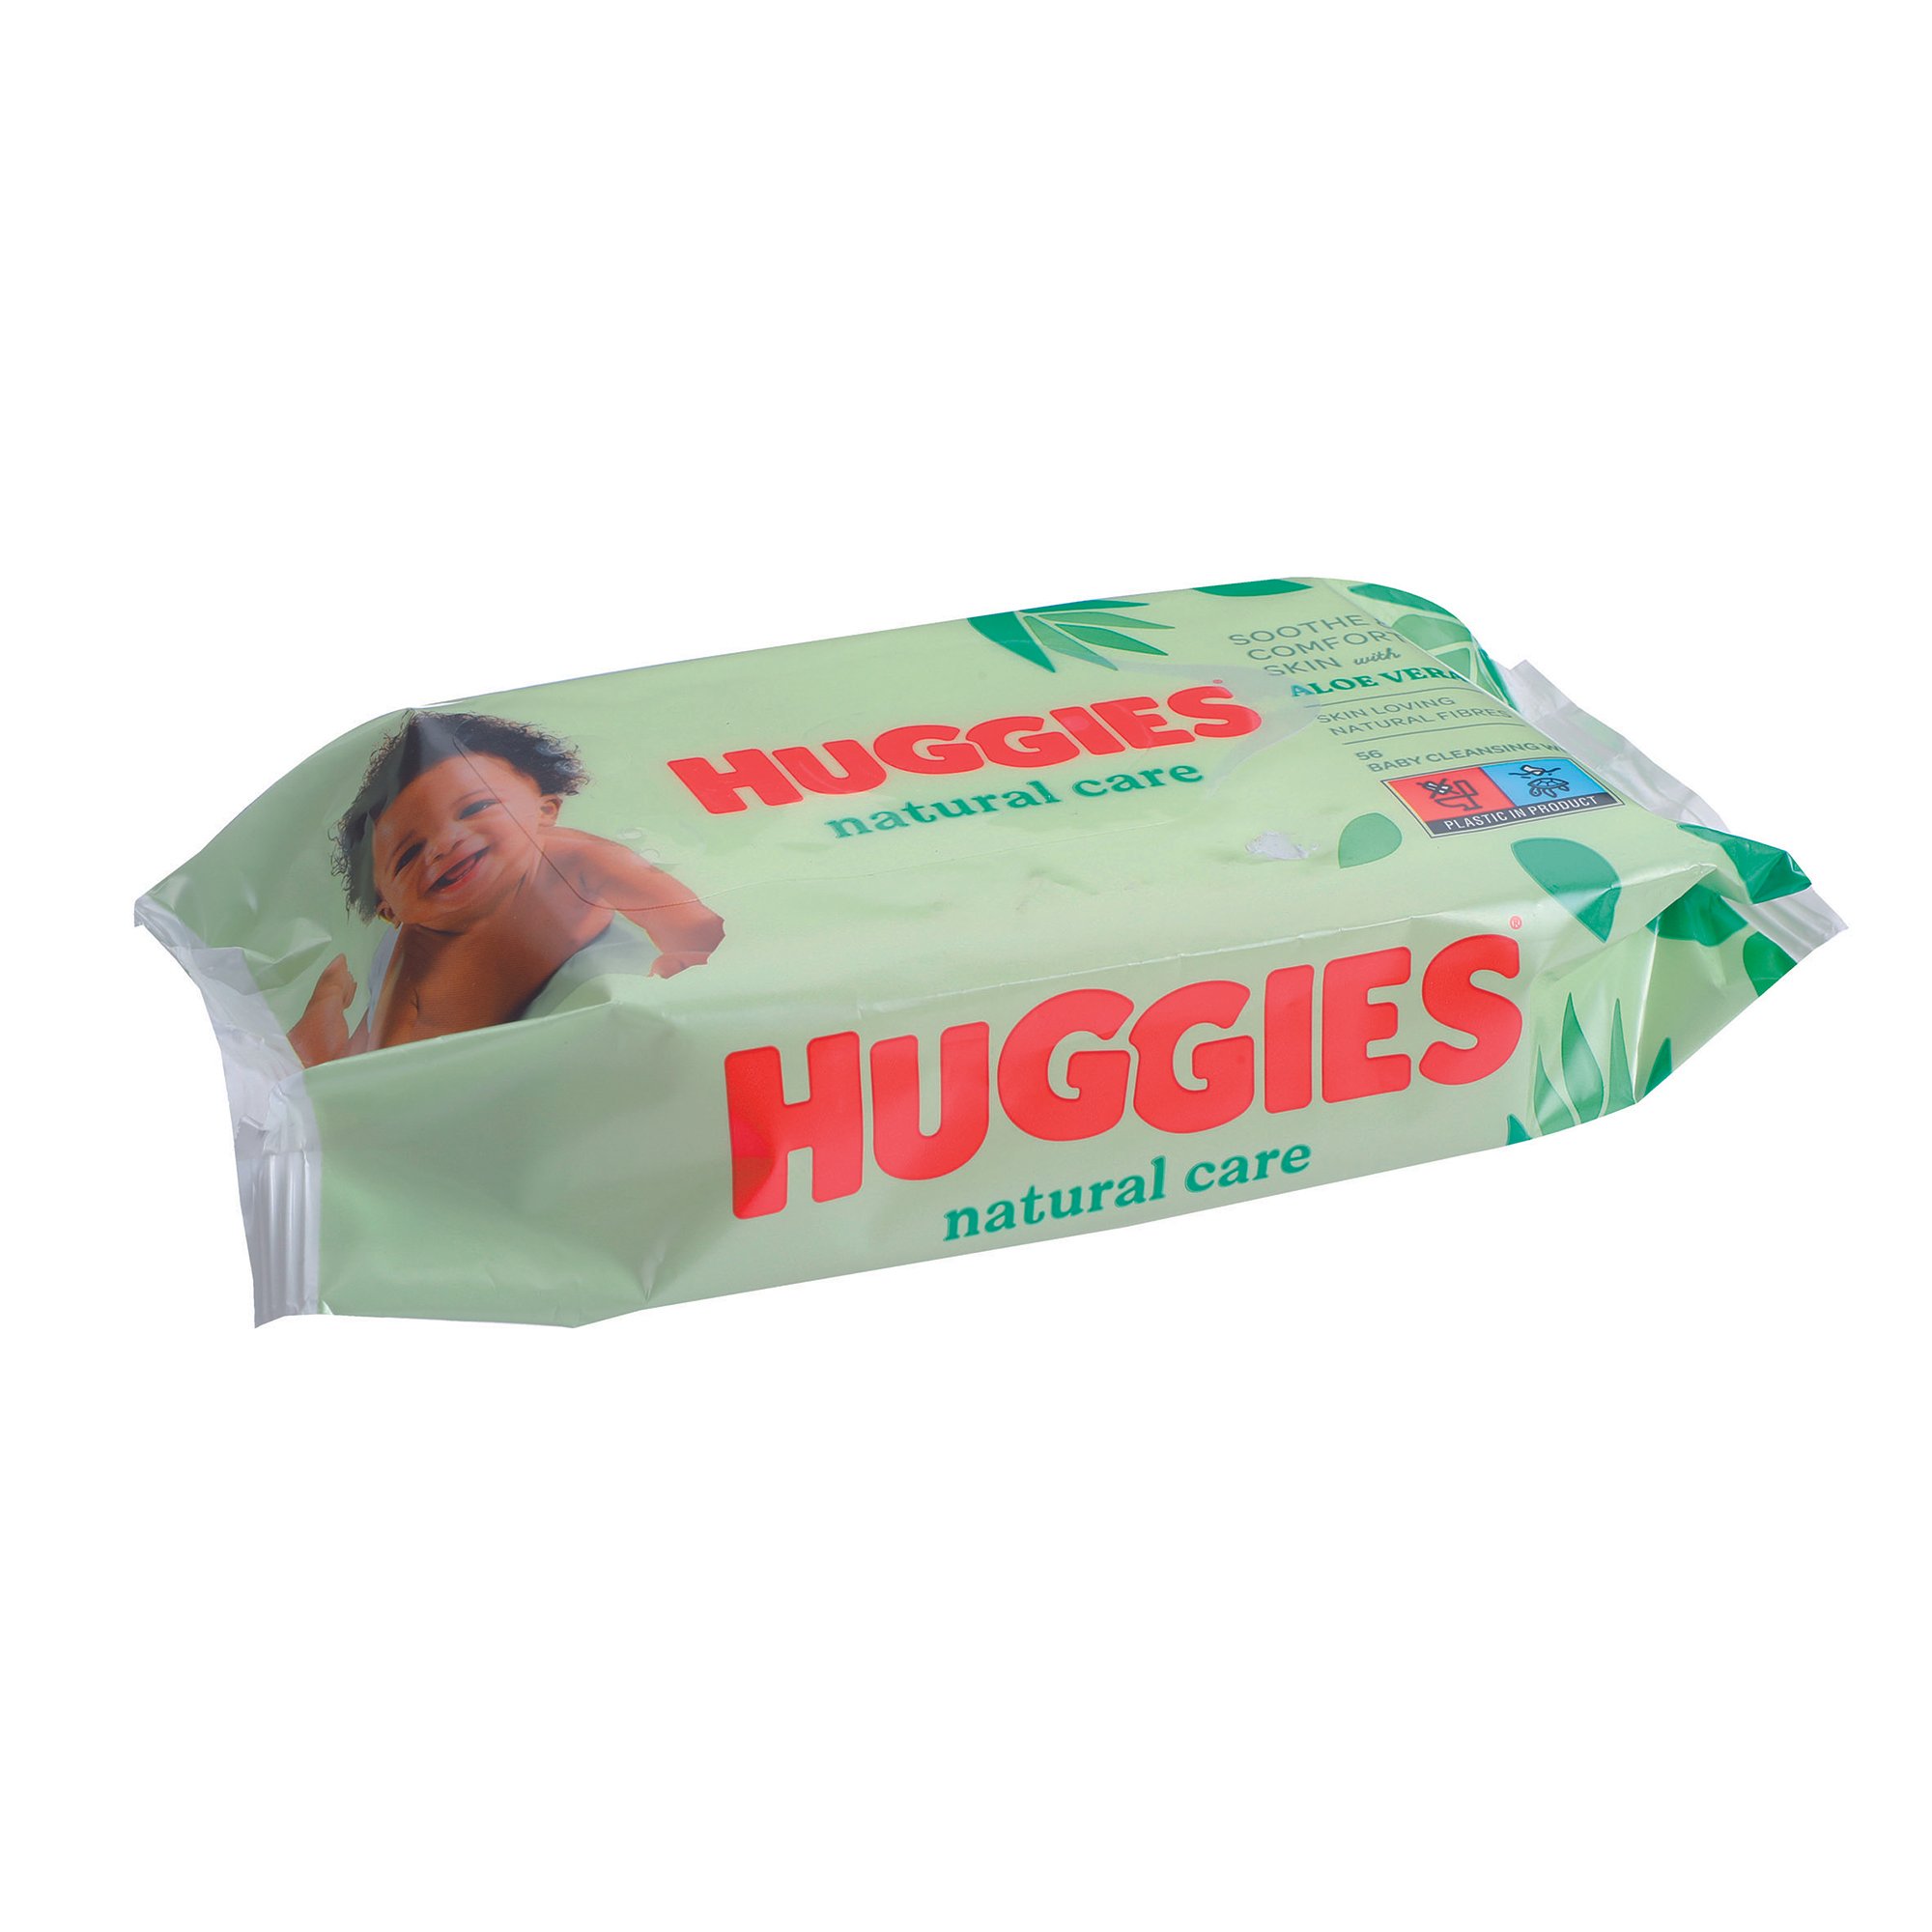 Les Bons Plans - ⭐️ Huggies, Lingettes bébé motifs Disney, 10x56 lingettes  a 12.49€ Livraison gratuite :  ⭐️ Méga pack Huggies, Lingettes  bébé 18 paquets de 56 lingettes a 19.99€ 